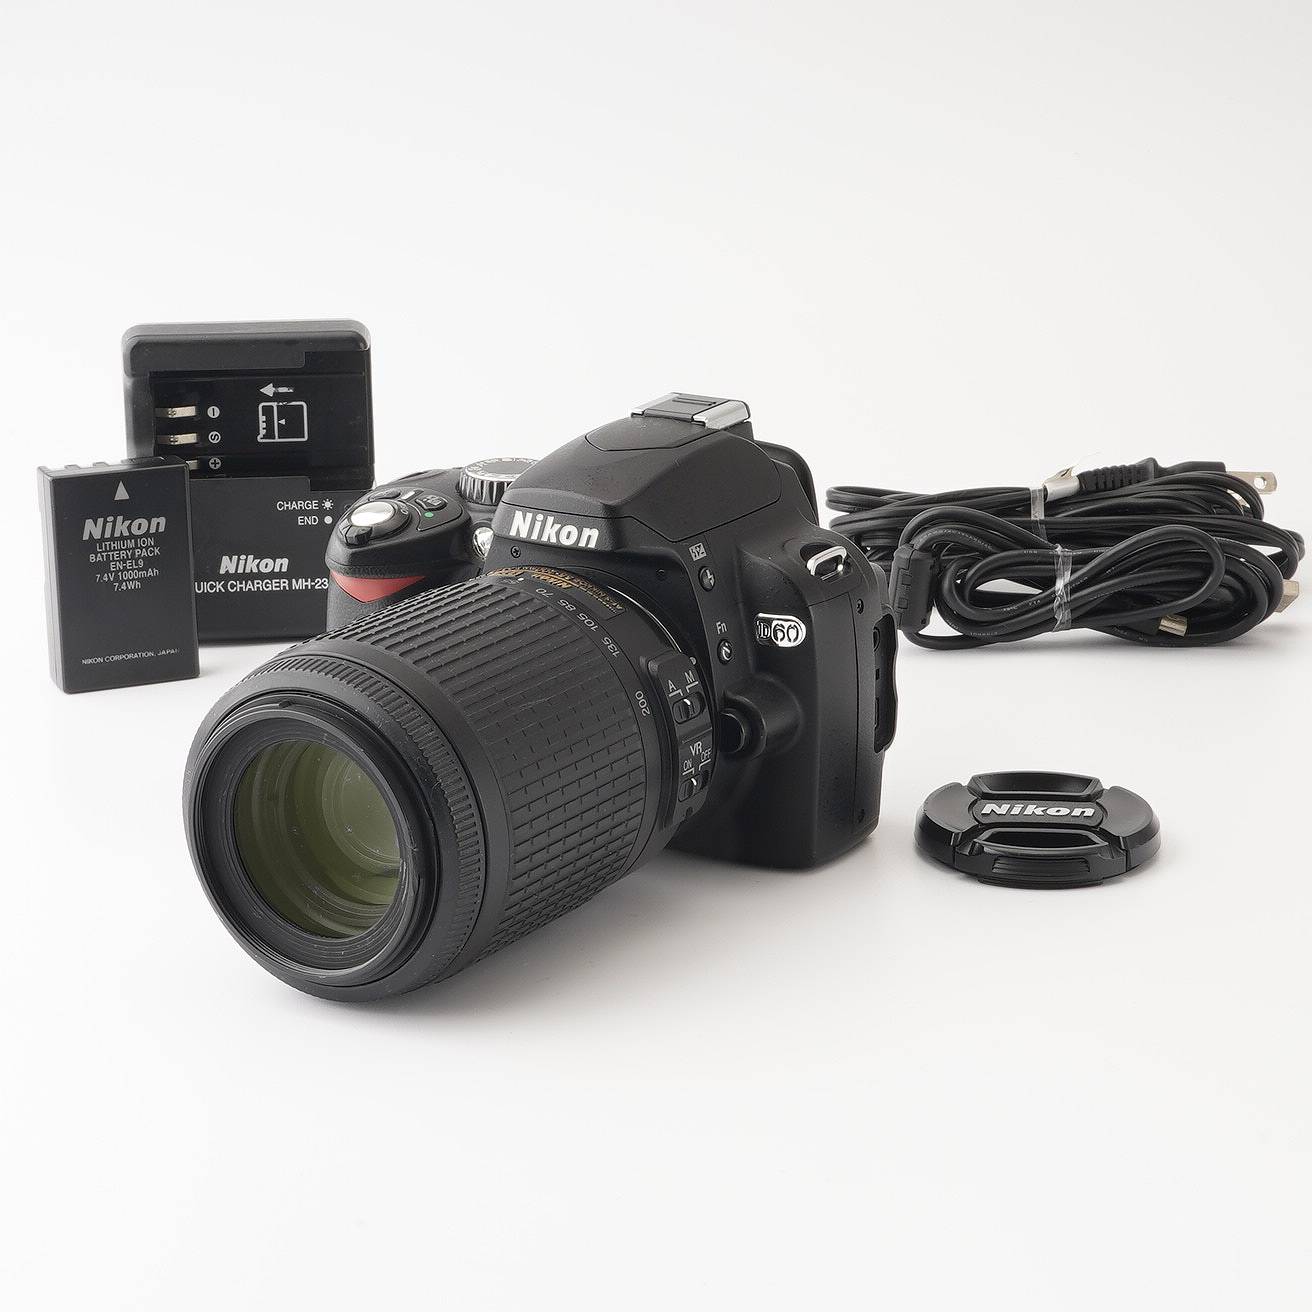 ニコン Nikon D60 デジタル一眼レフカメラ / Nikon DX AF-S NIKKOR 55-200mm F4-5.6 G ED VR